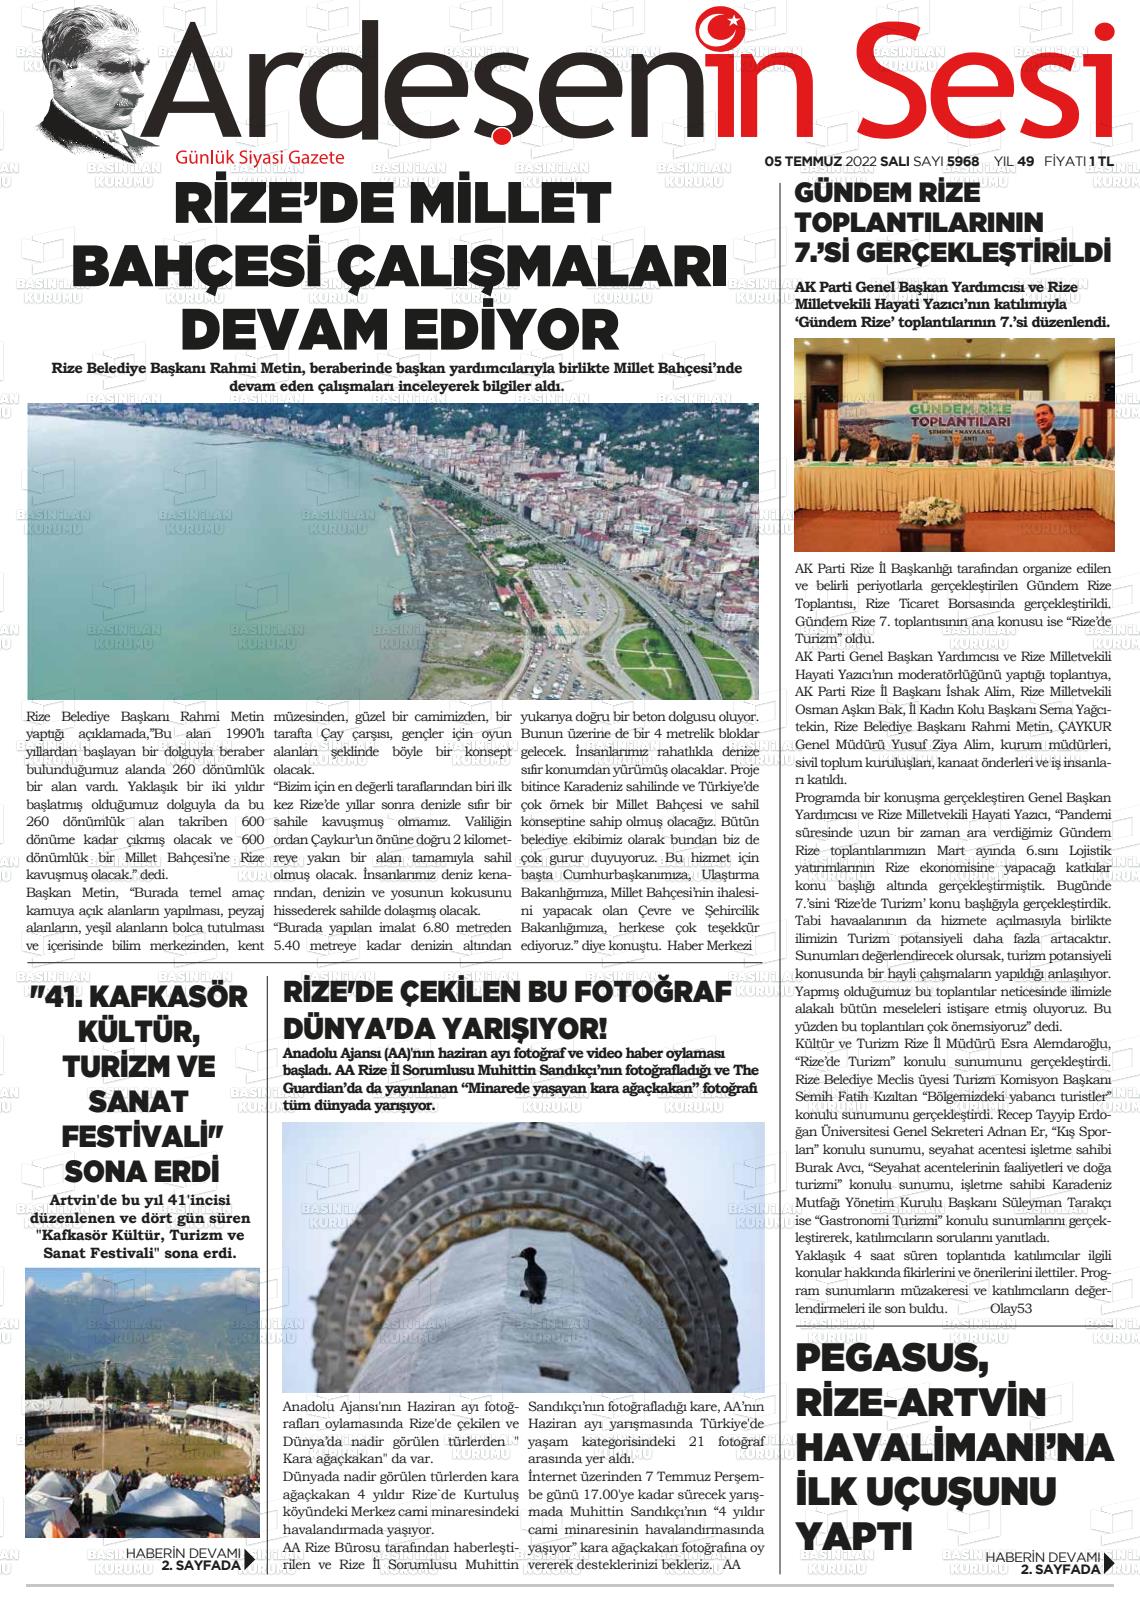 05 Temmuz 2022 Ardeşenin Sesi Gazete Manşeti